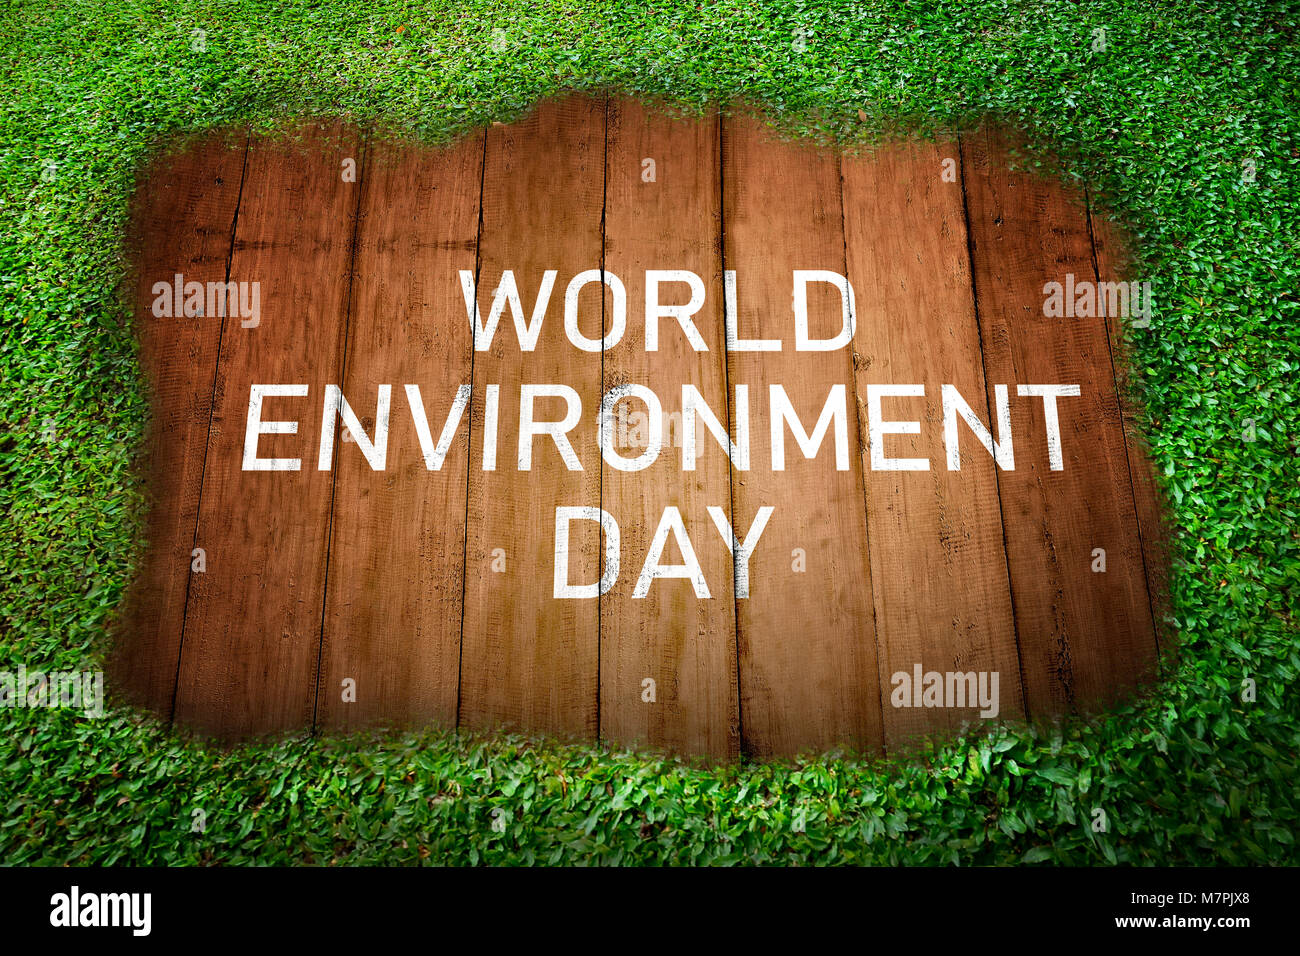 La journée mondiale de l'environnement message sur planche en bois avec fond d'herbe verte Banque D'Images